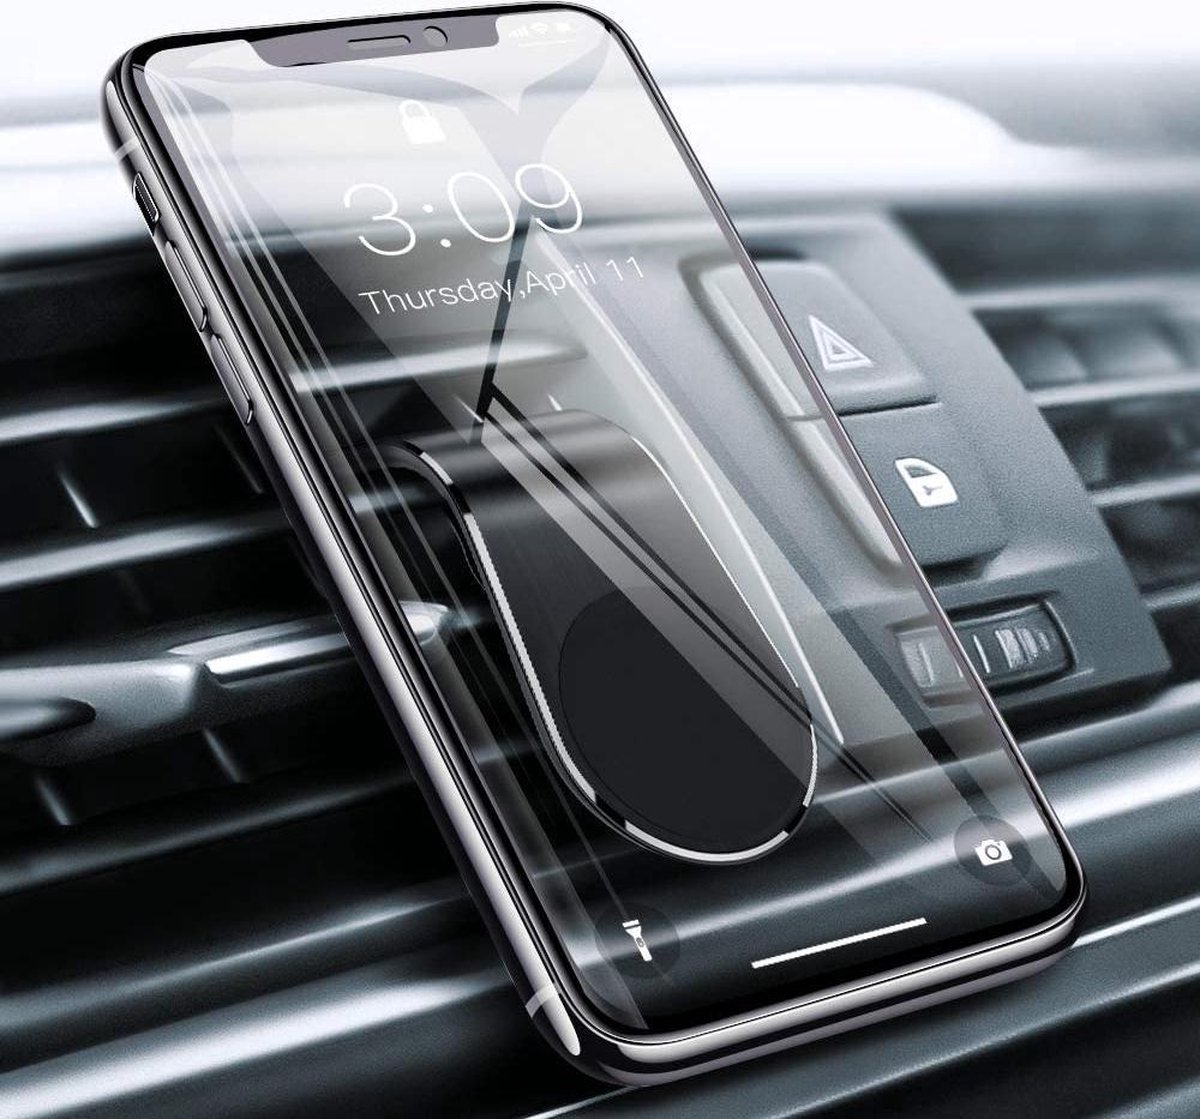 Universele Magneet Telefoonhouder voor in de Auto - Ventilatierooster houder - Mobiel Autohouder - Handsfree Bellen - Smartphone Mobile Car Phone Holder - Geschikt voor Apple iPhone - Samsung